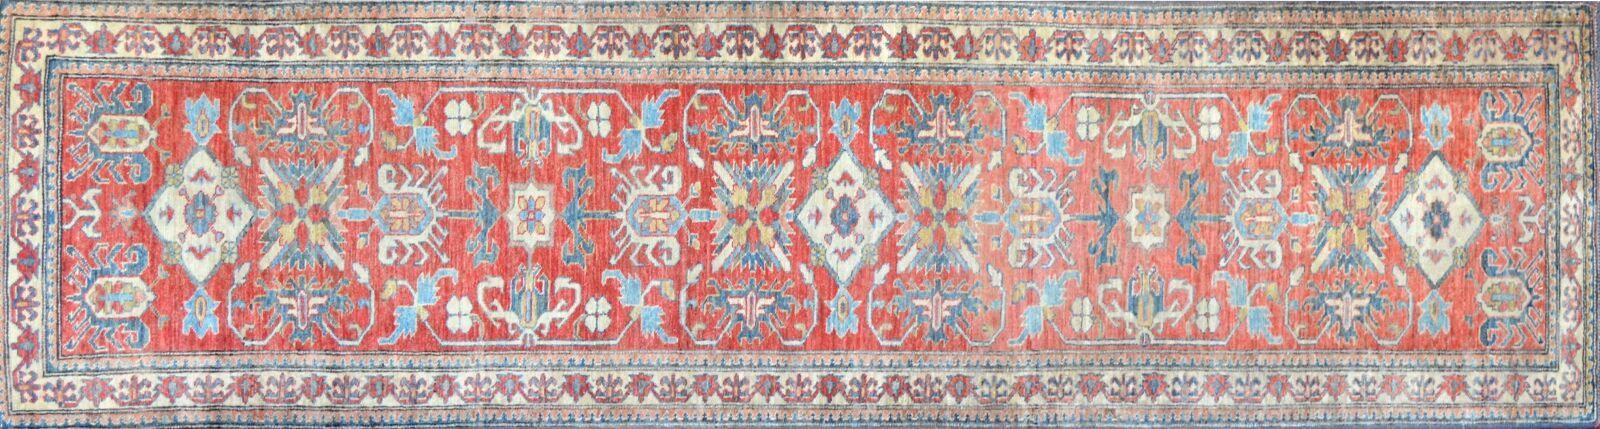 Null 哈萨克画廊南高加索地区，约1975年

羊毛基础上的羊毛丝绒

砖场上有多色的几何装饰

305 x 080 cm

状况良好